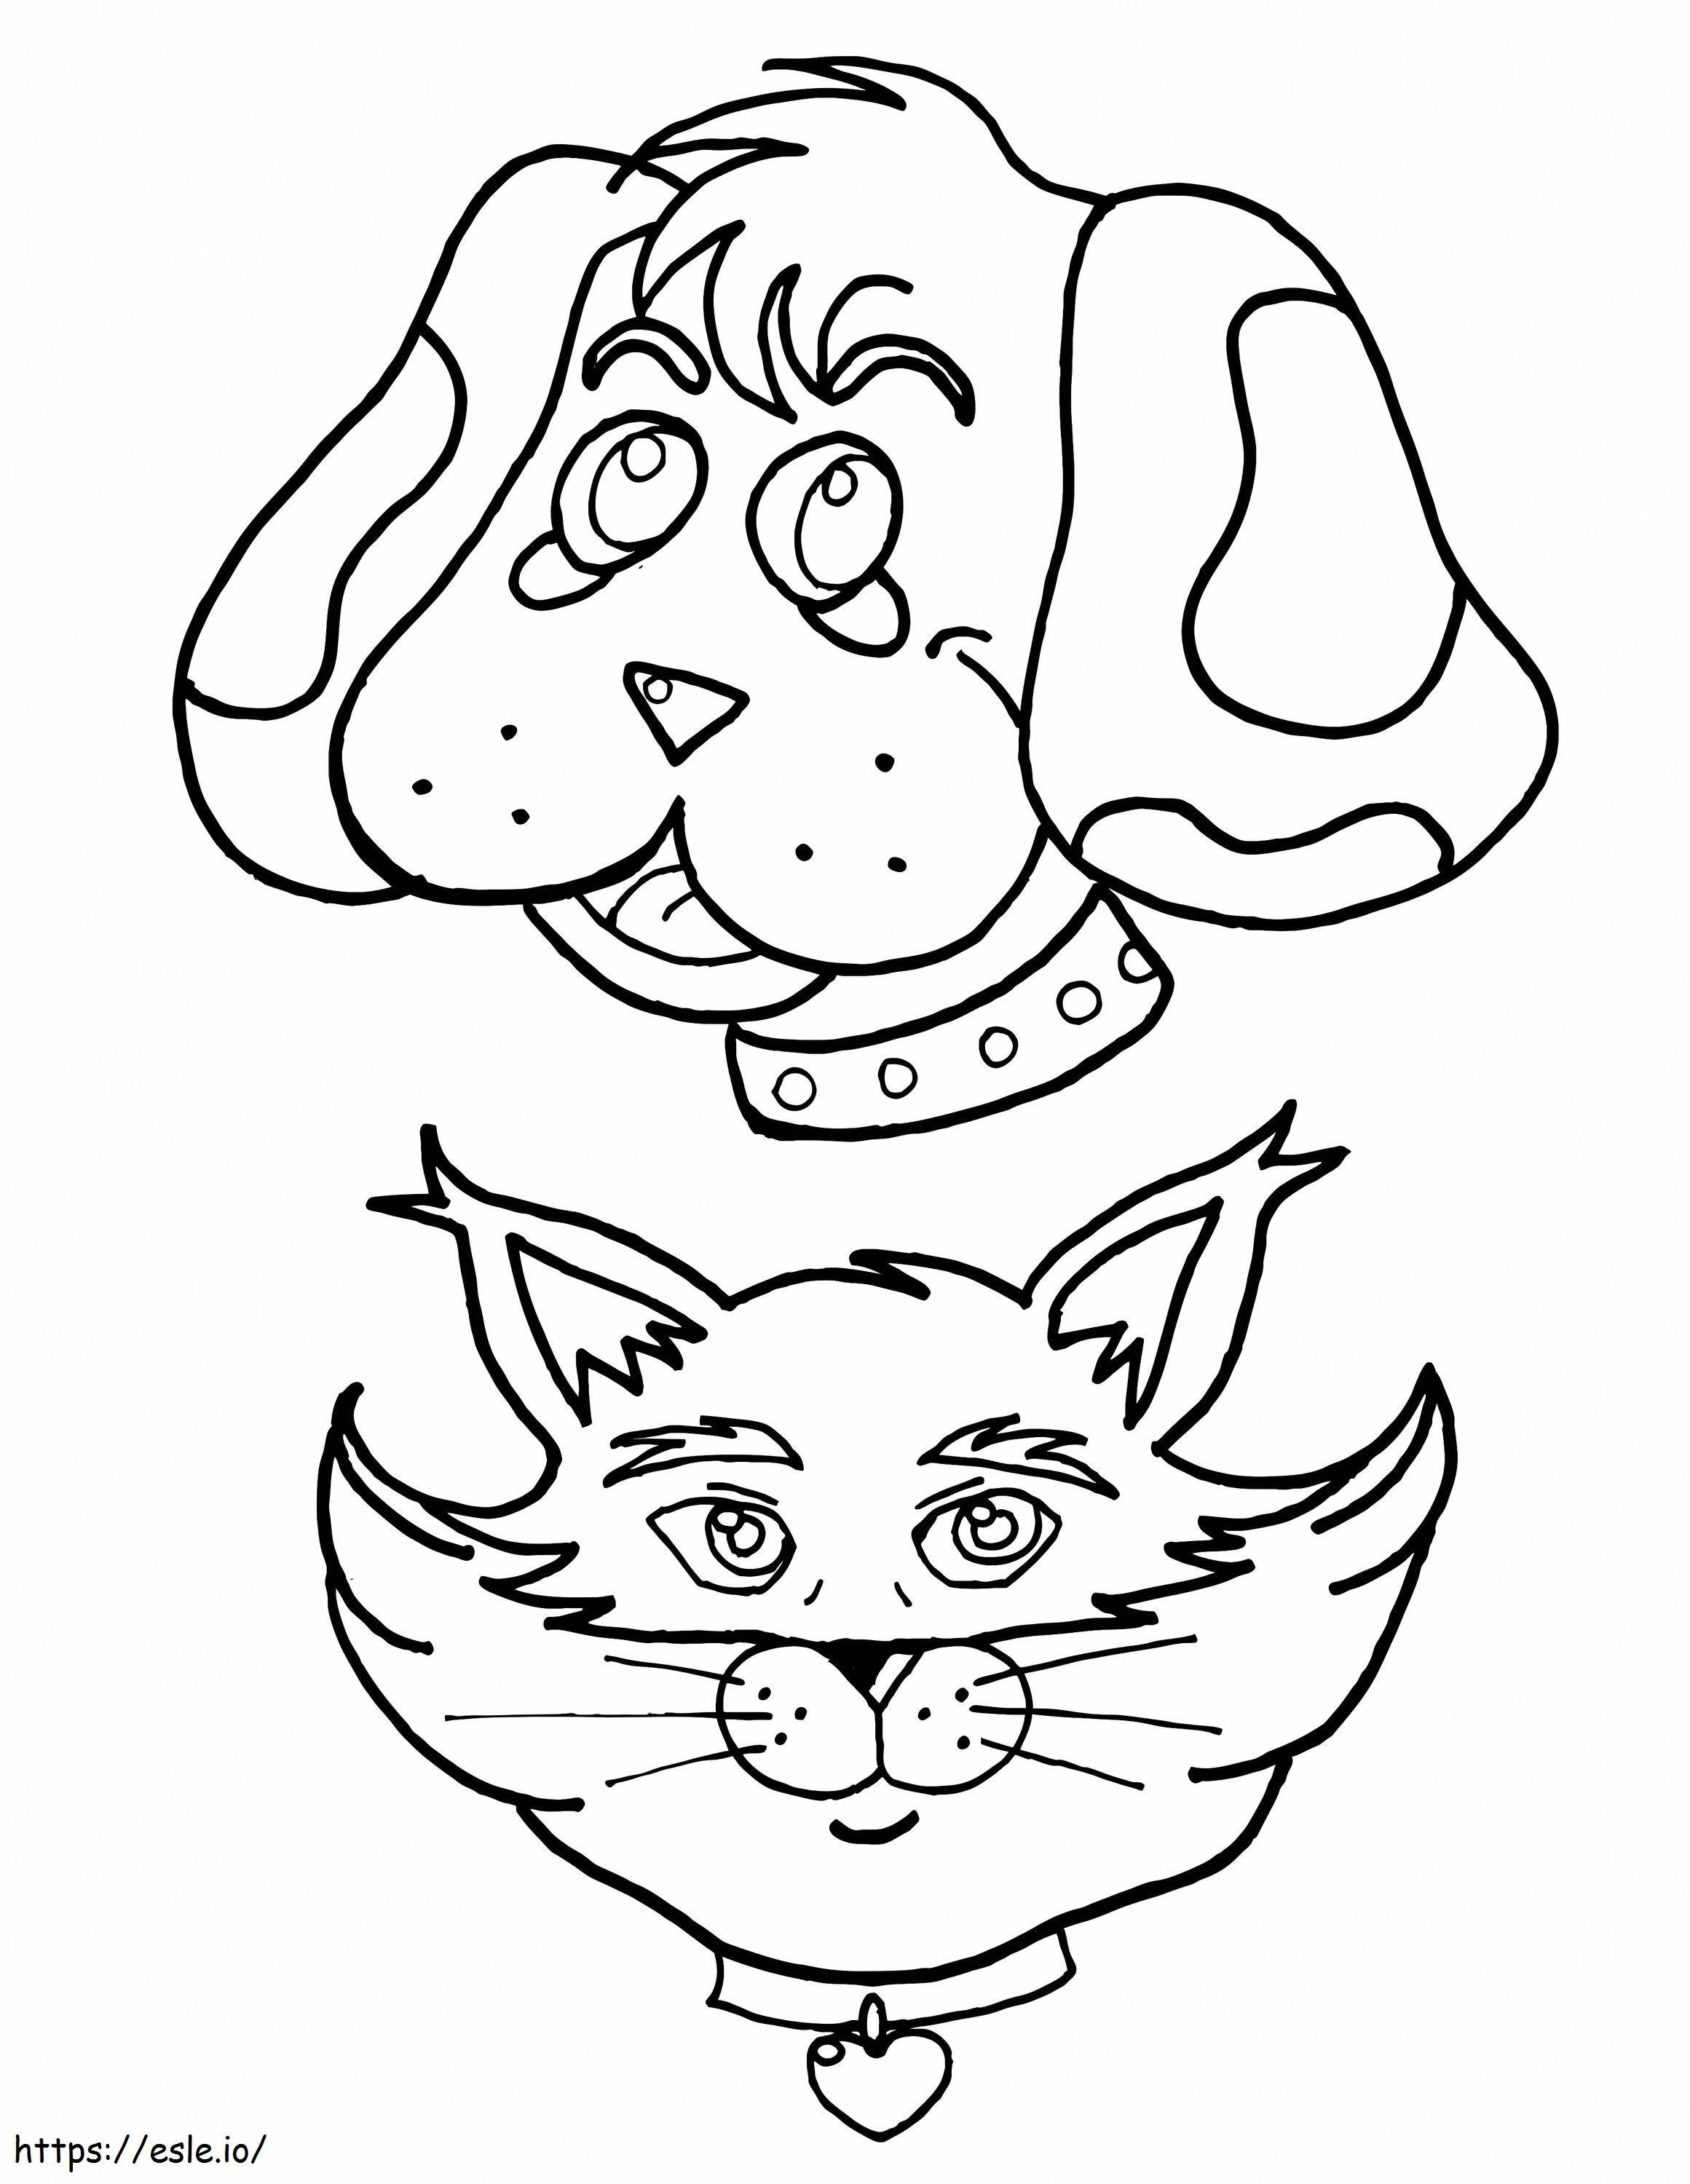 Caras de cachorro e gato para colorir